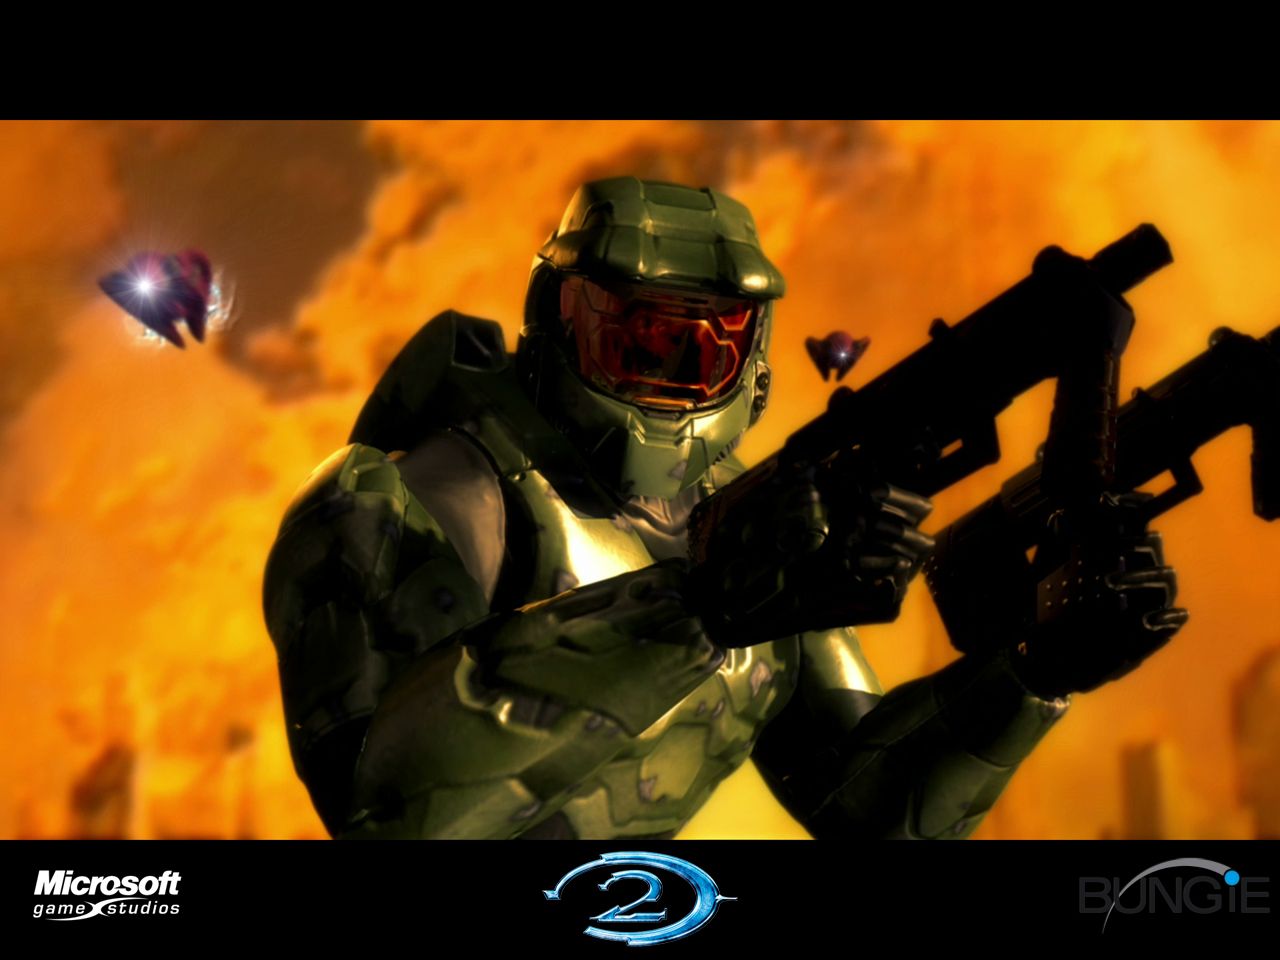 Fond d'écran gratuit de Halo 2 numéro 42894